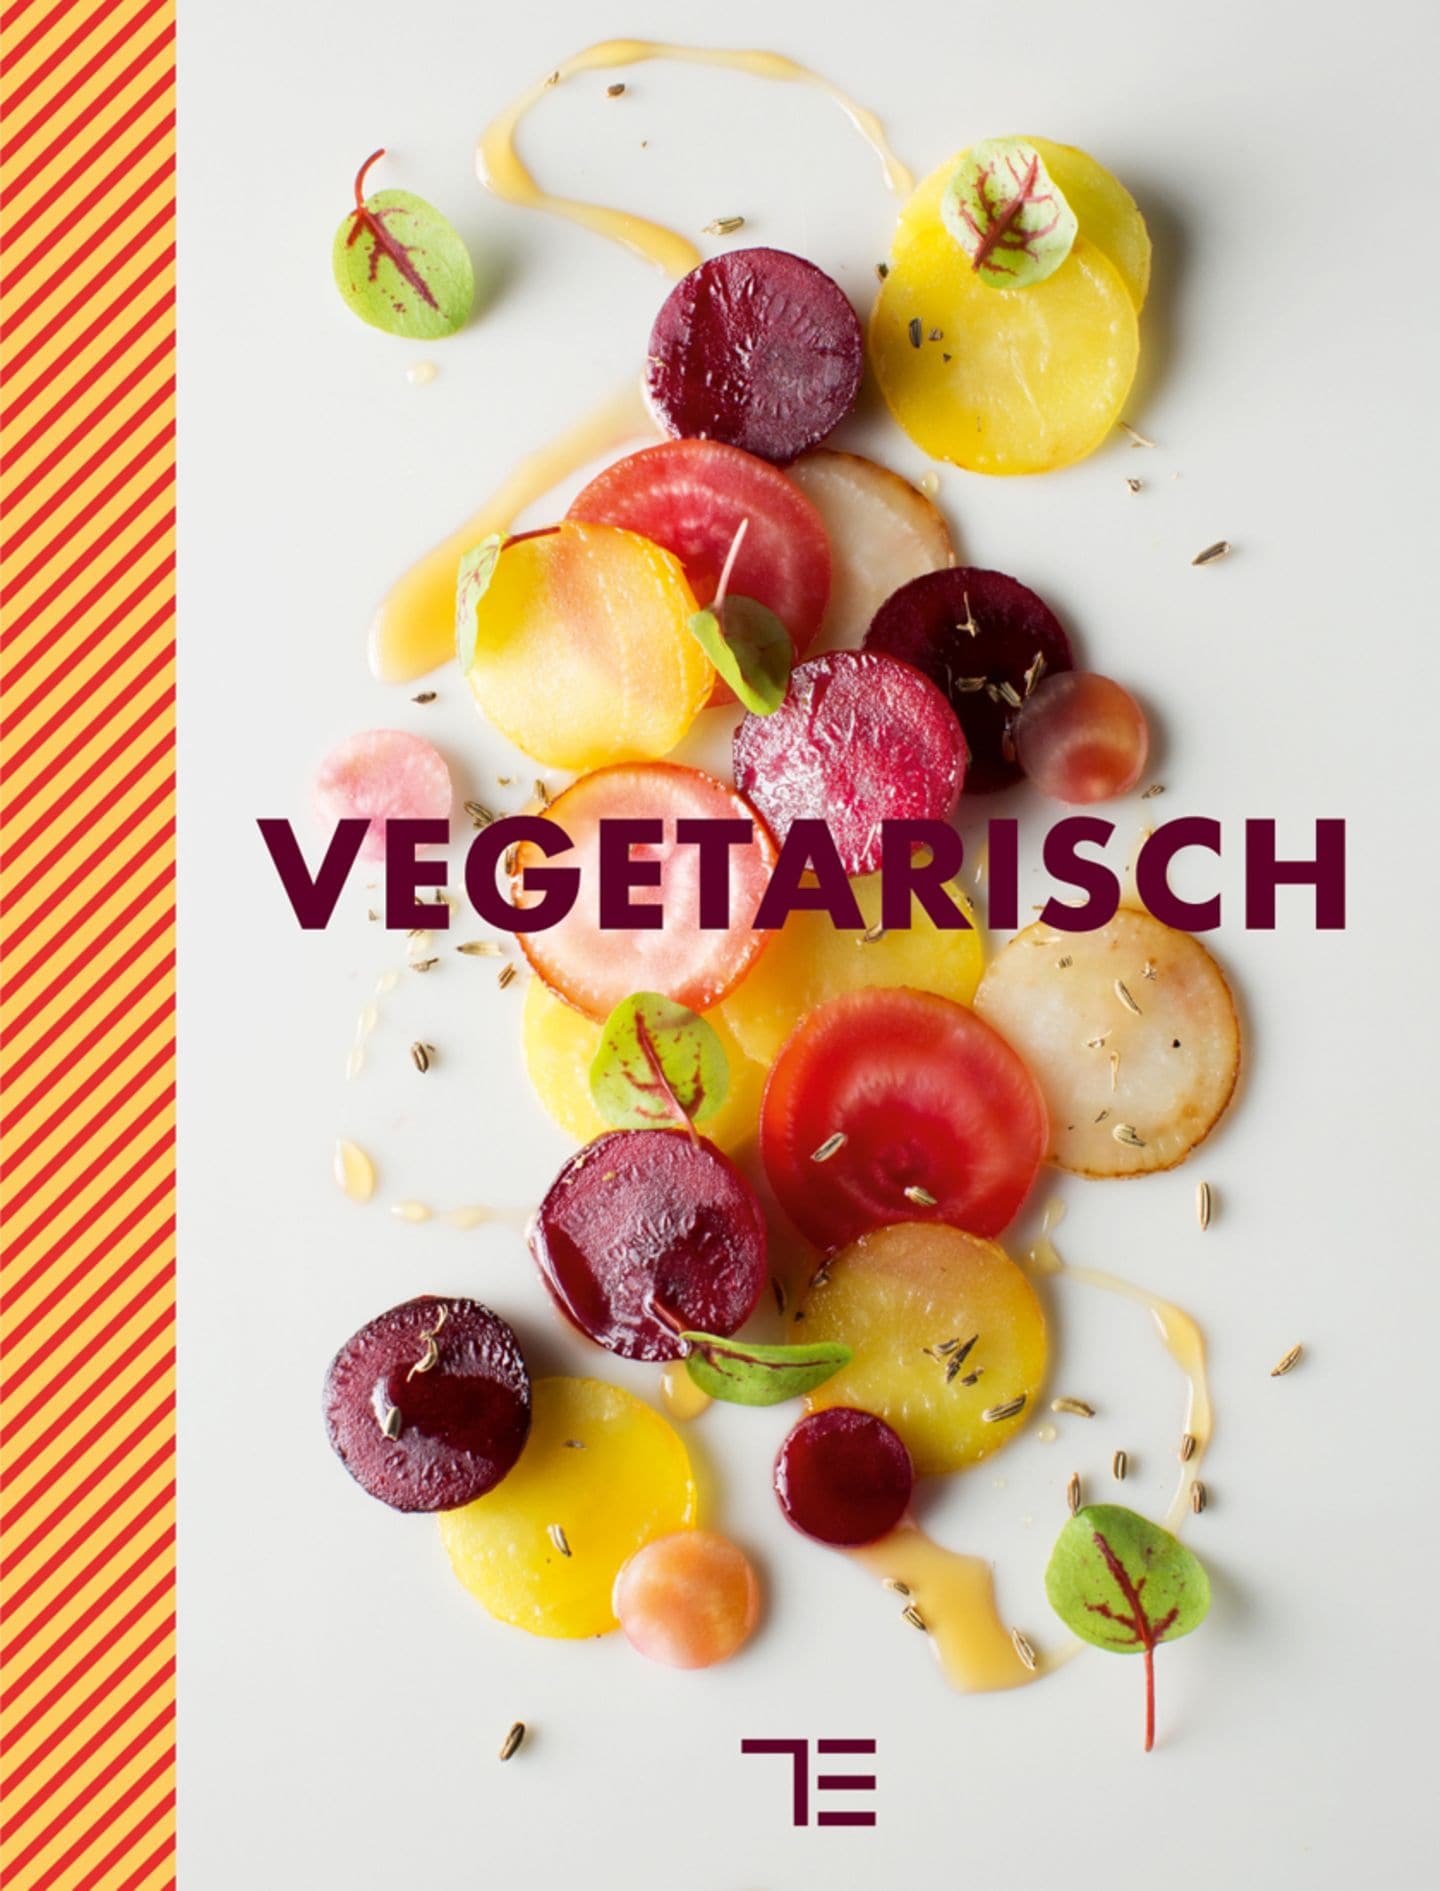 Kochbuch "Vegetarisch"